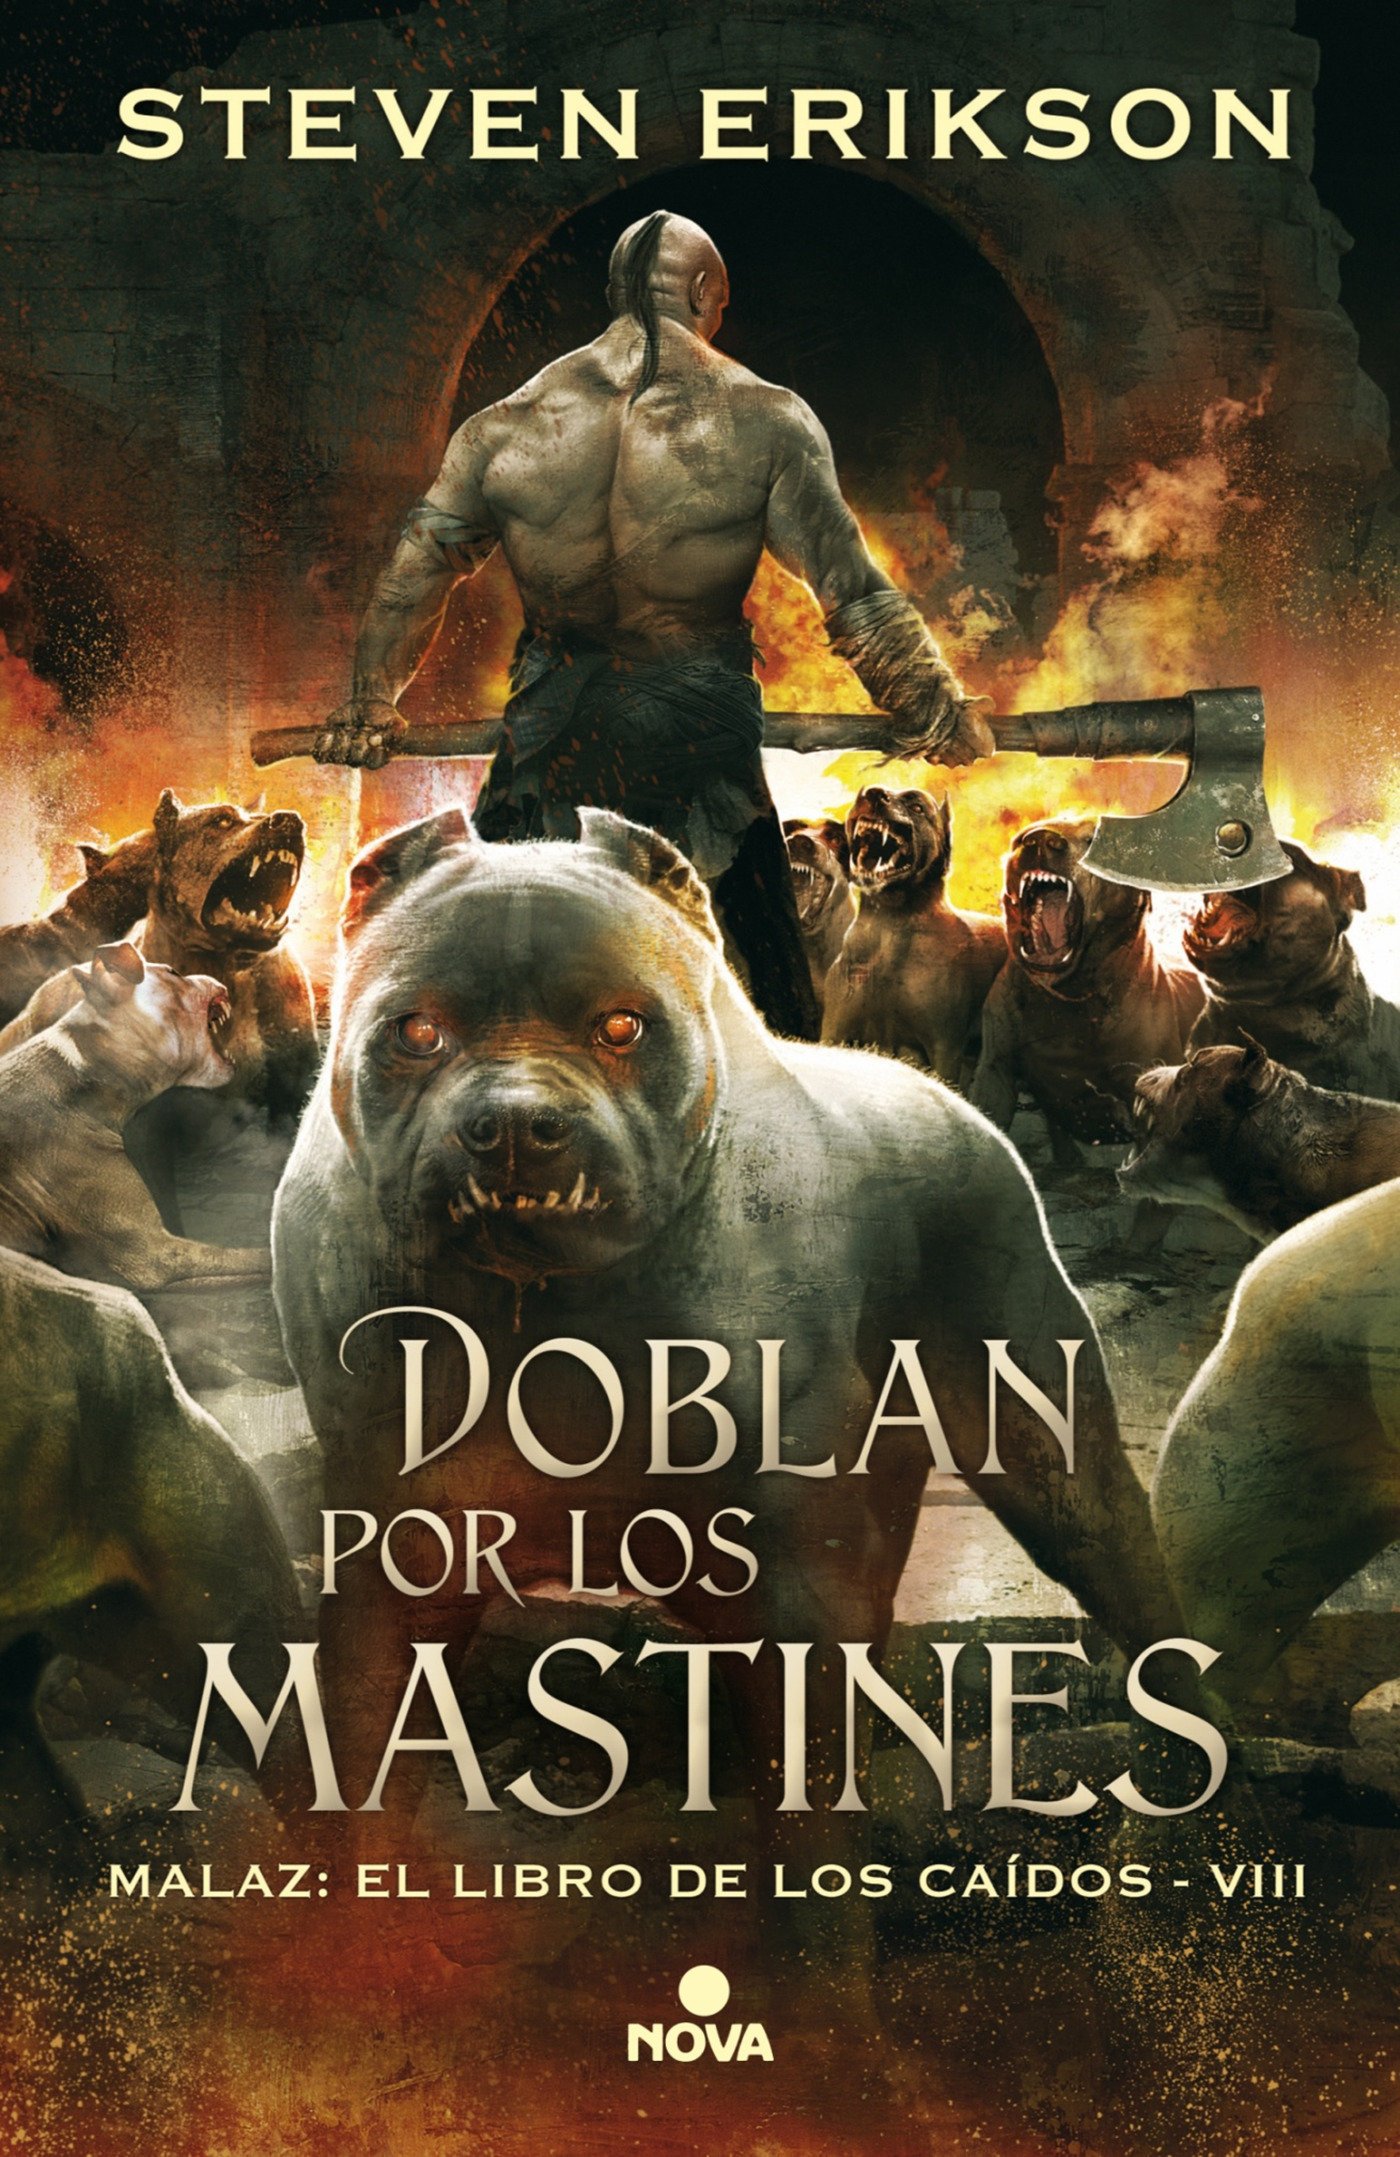 Doblan Por los Mastines (Spanish language, 2017, Ediciones B)